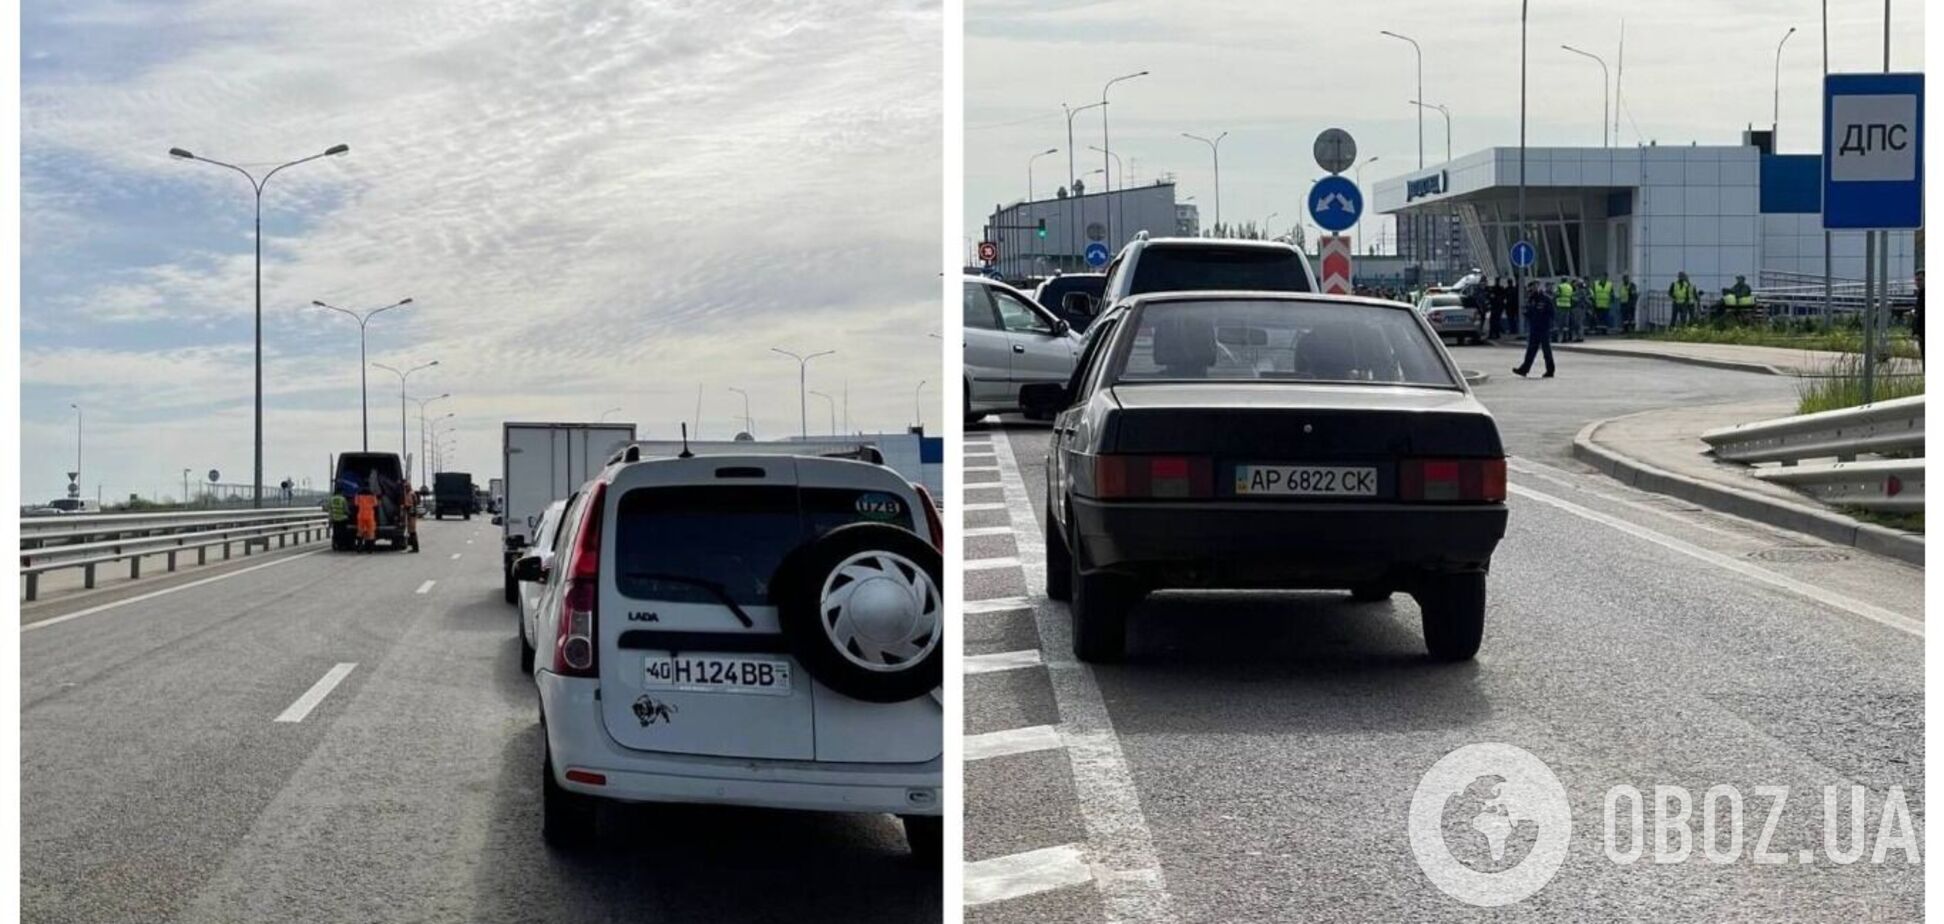 Авто разворачивали назад: оккупанты закрывали Крымский мост для движения, заявив об угрозе 'бавовны'. Фото и видео